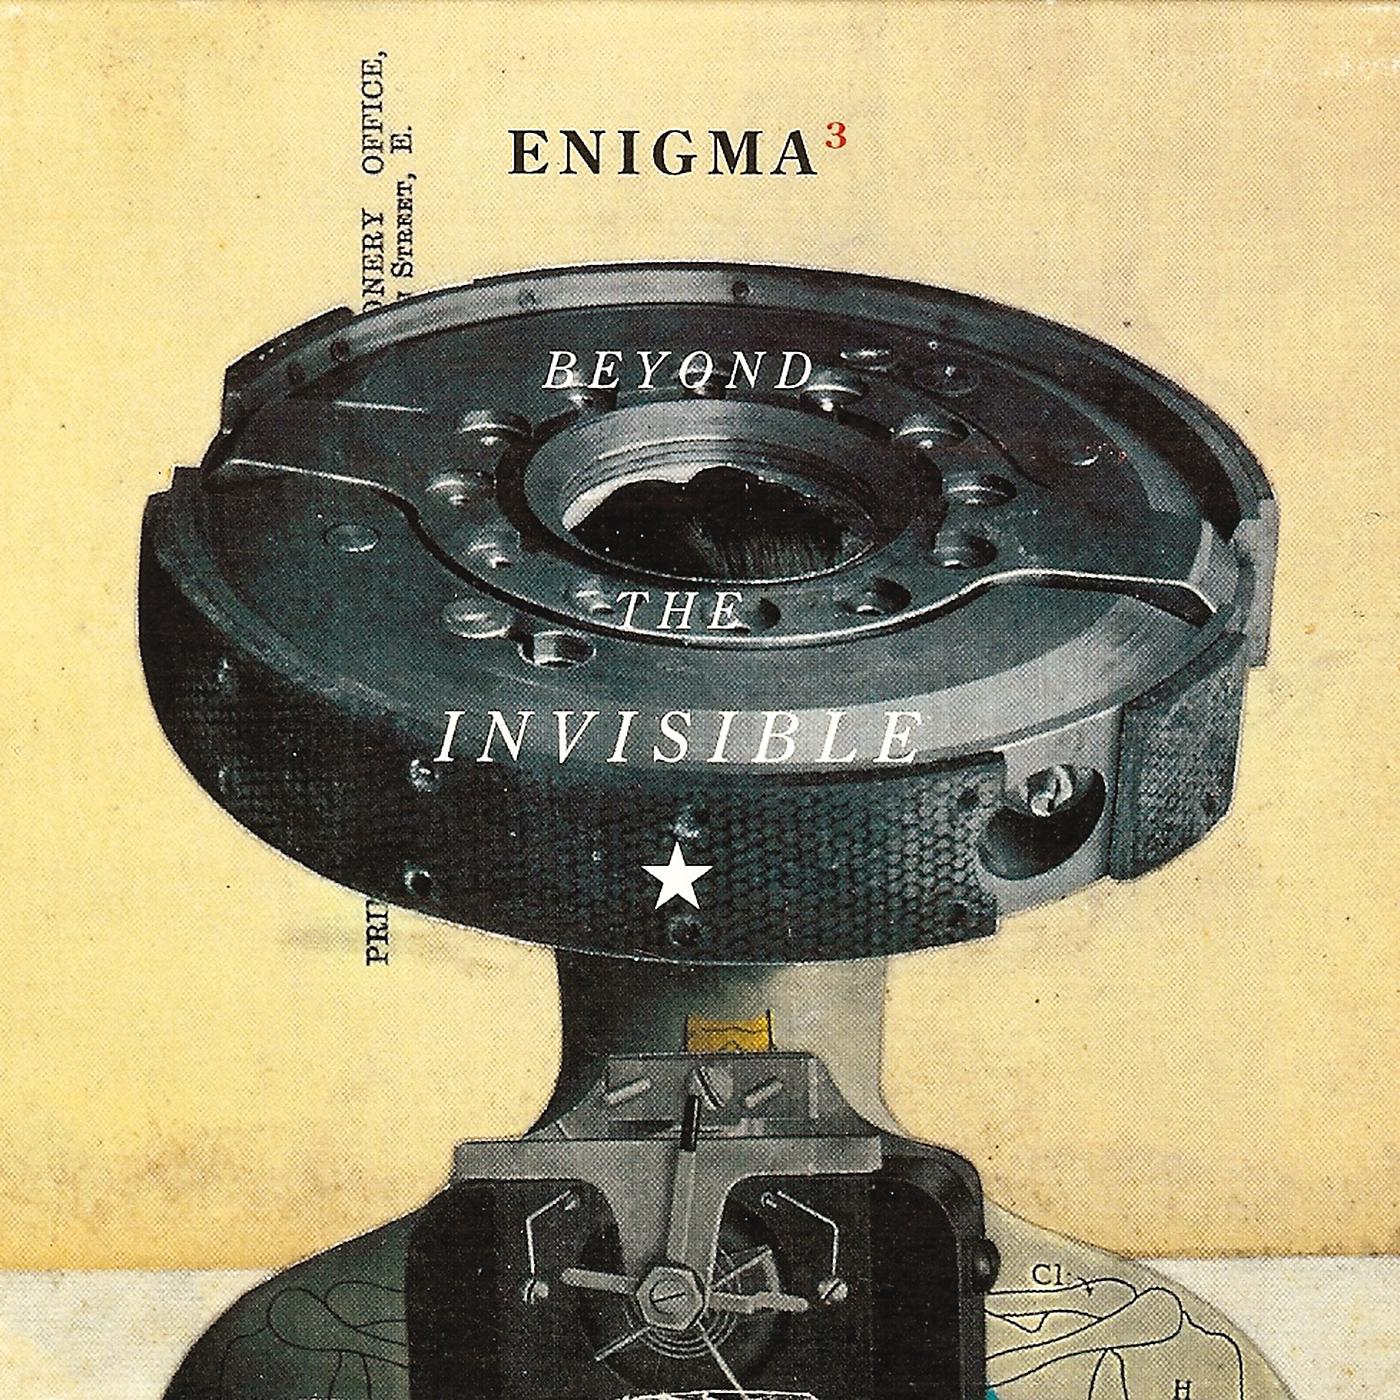 Le roi est mort. Enigma 1996. Enigma - Beyond the Invisible (1996). Enigma 1990. Enigma Beyond the Invisible альбом.